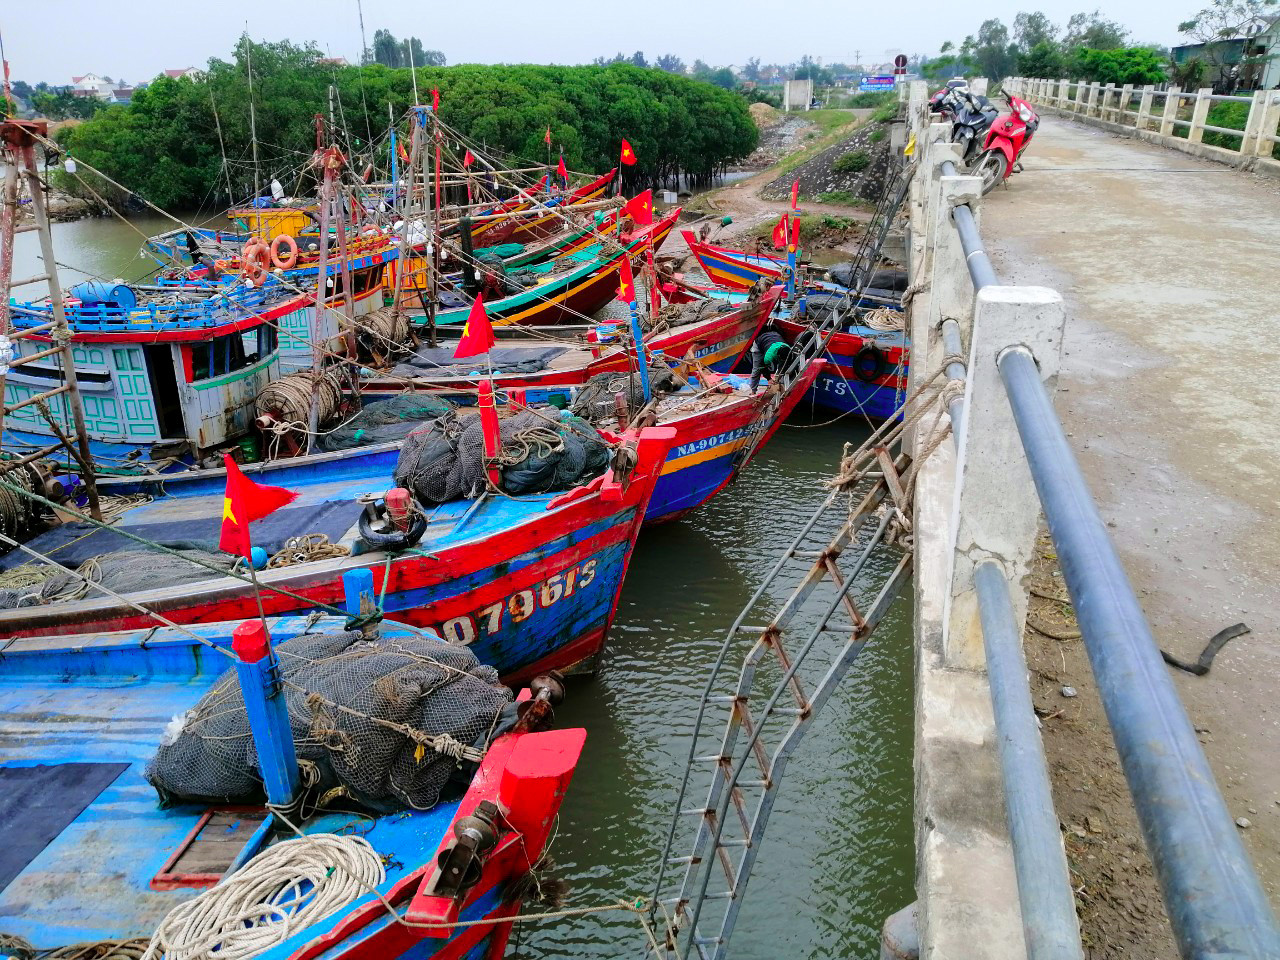 Cầu Diễn Kim lại bị ngư dân chiếm dụng làm nơi neo đậu tàu thuyền. Ảnh: Nguyên Châu